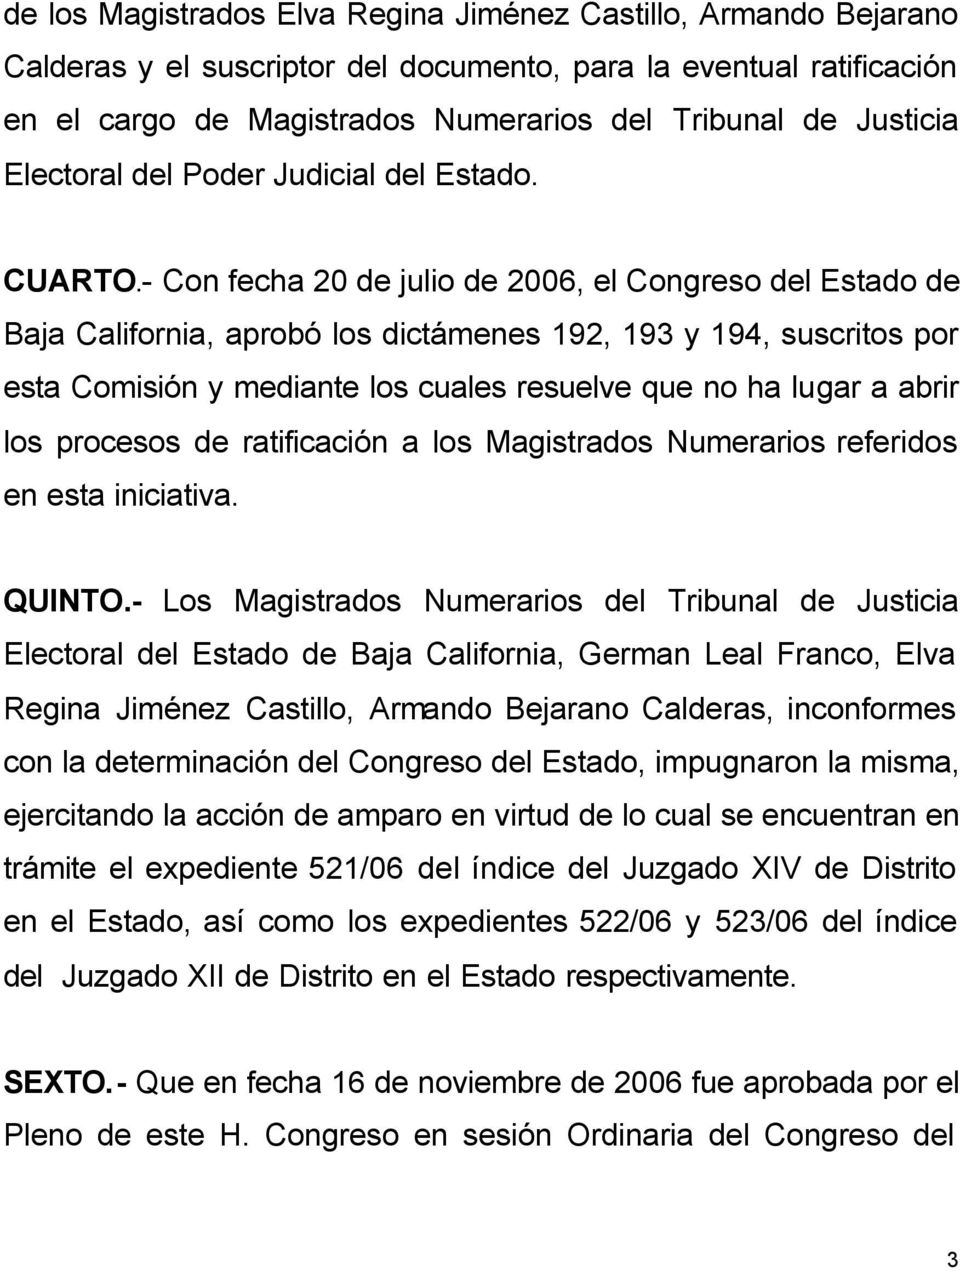 - Con fecha 20 de julio de 2006, el Congreso del Estado de Baja California, aprobó los dictámenes 192, 193 y 194, suscritos por esta Comisión y mediante los cuales resuelve que no ha lugar a abrir